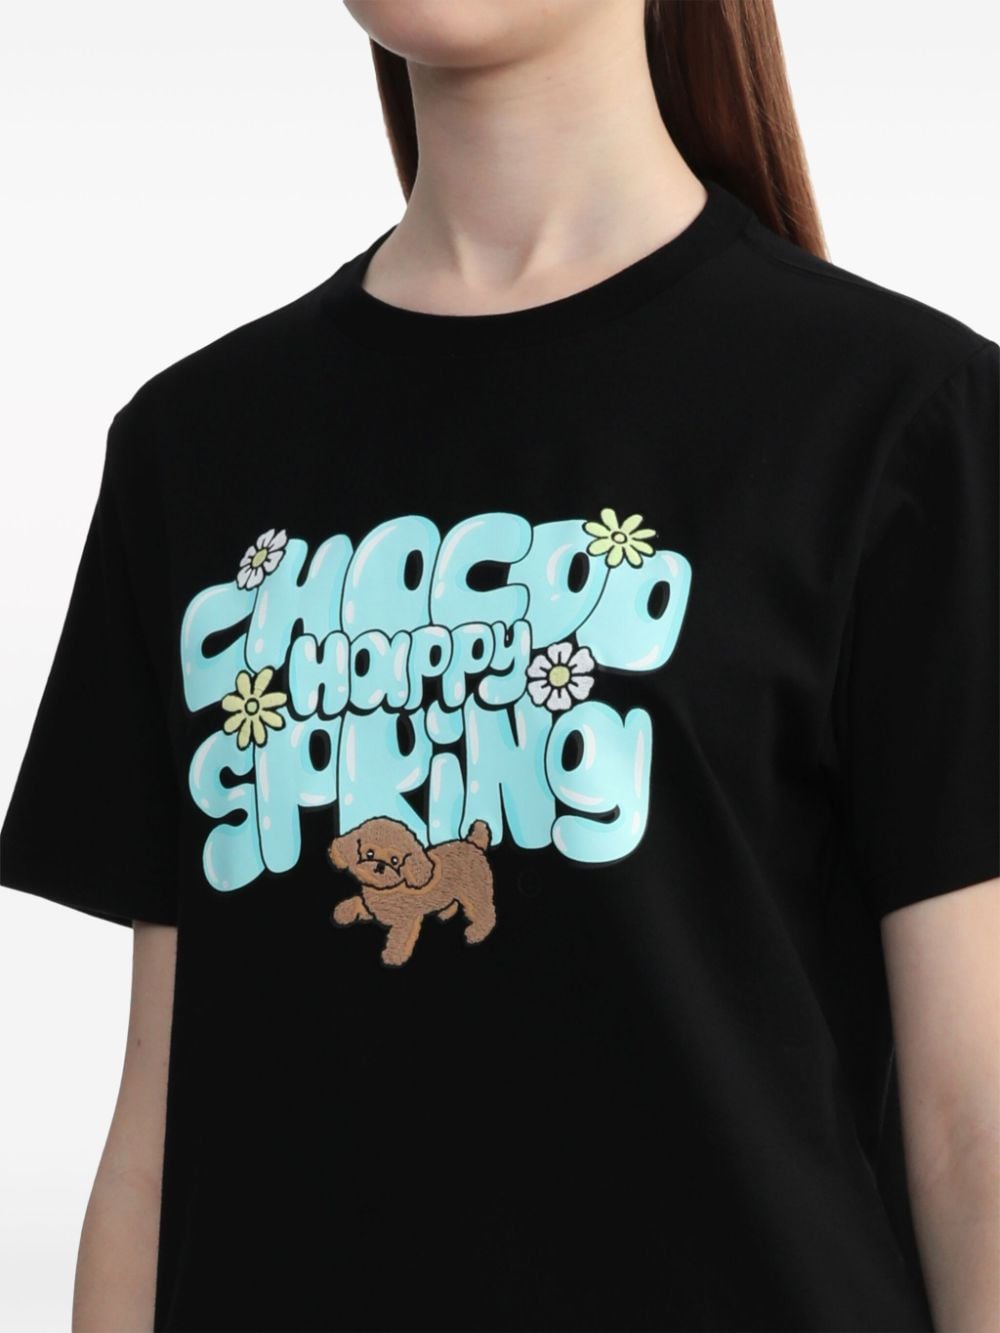 CHOCOOLATE Katoenen T-shirt Zwart